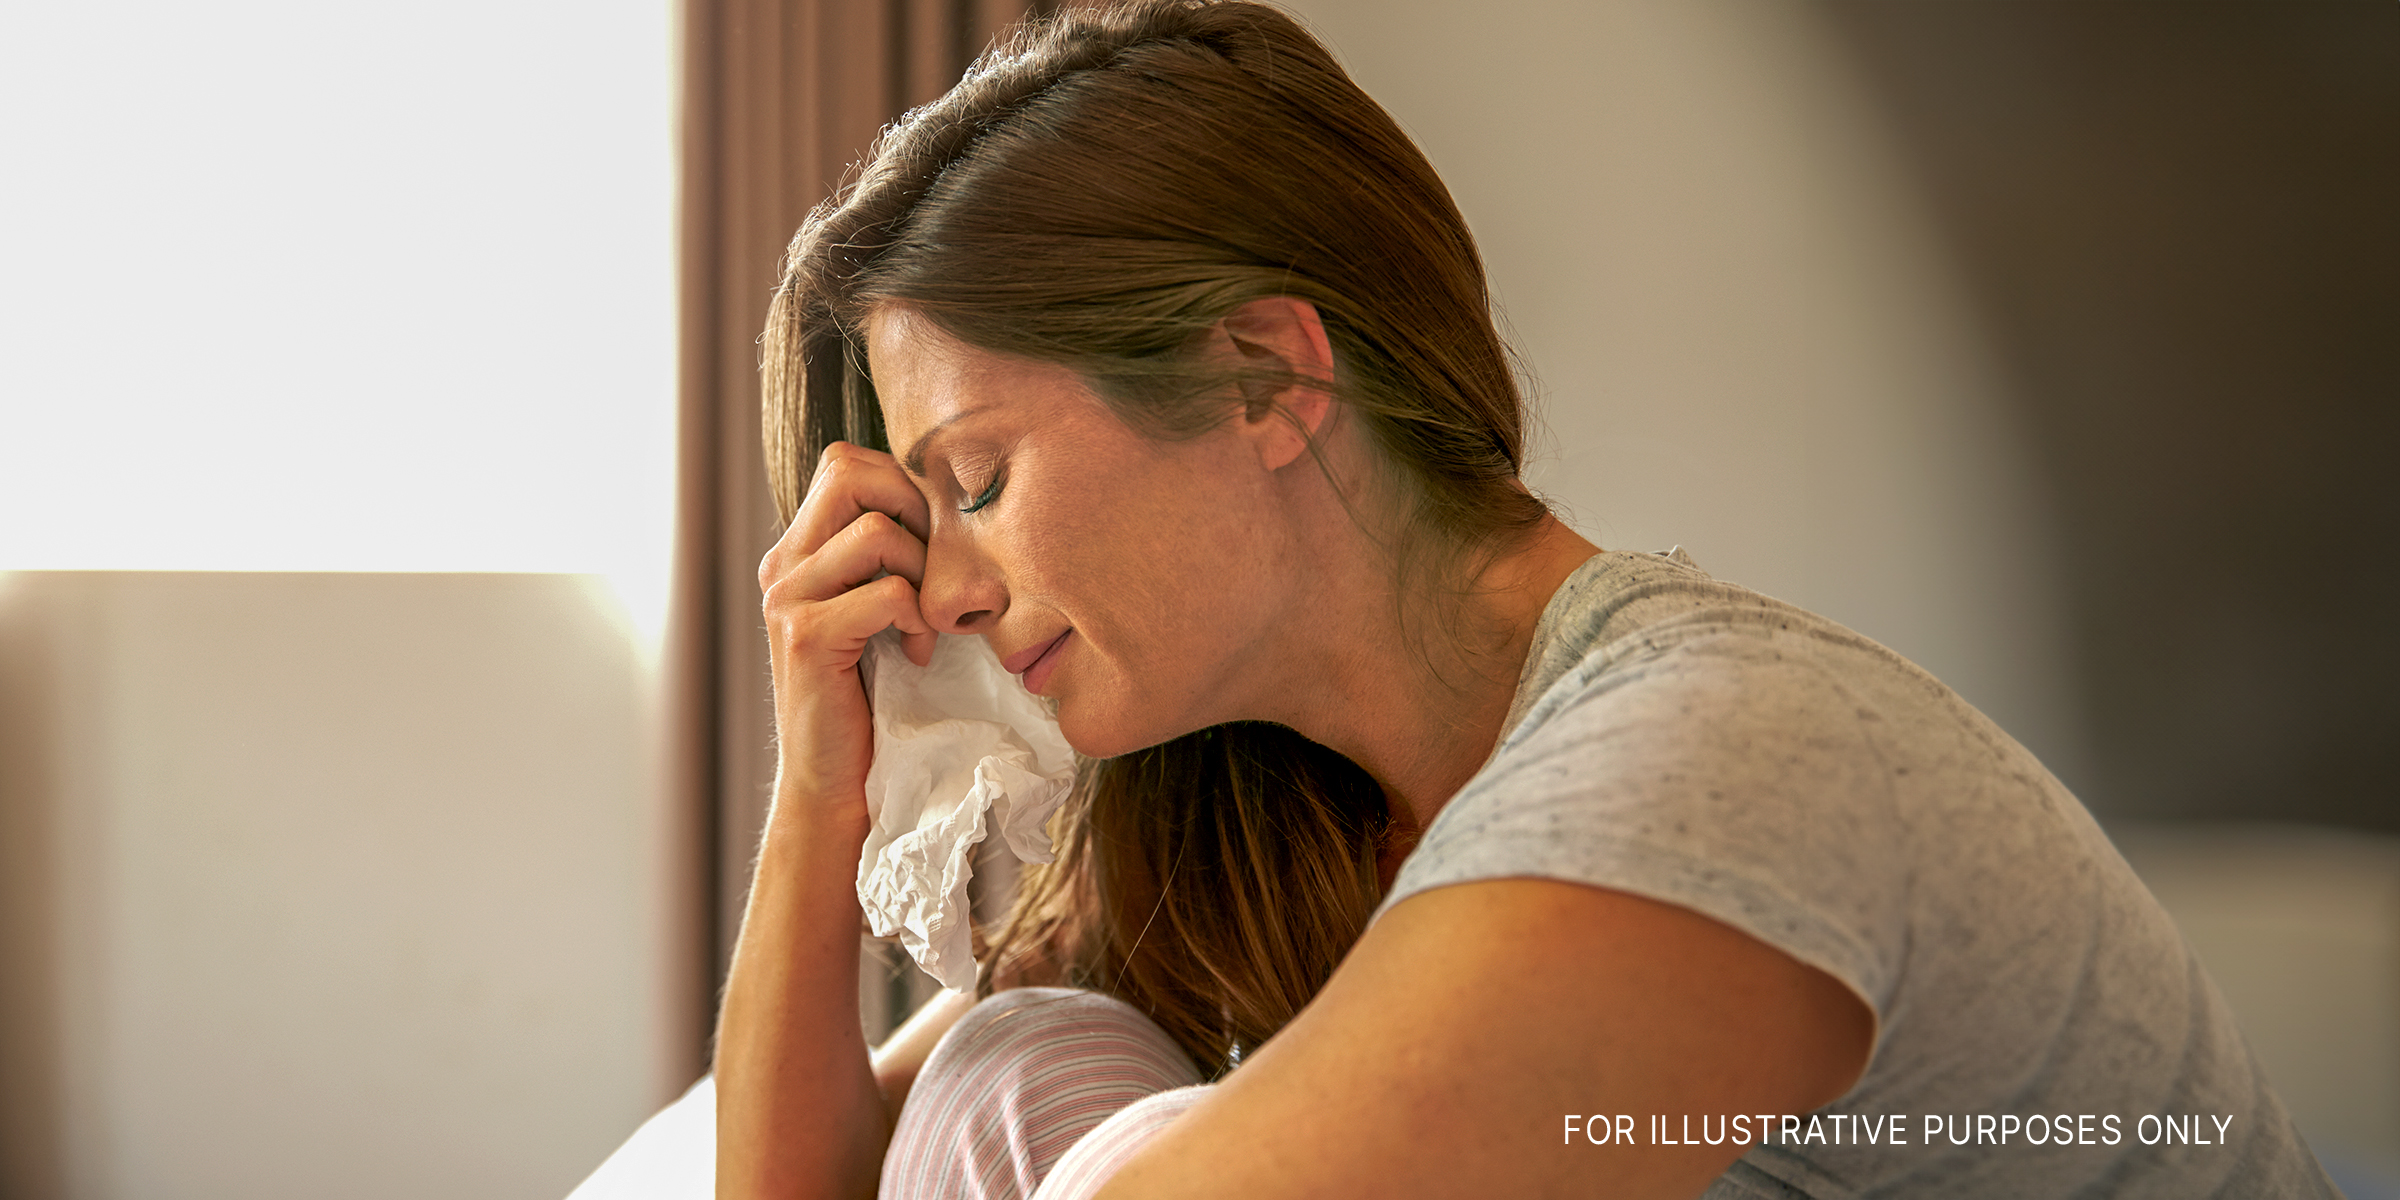 Eine weinende Frau | Quelle: Shutterstock